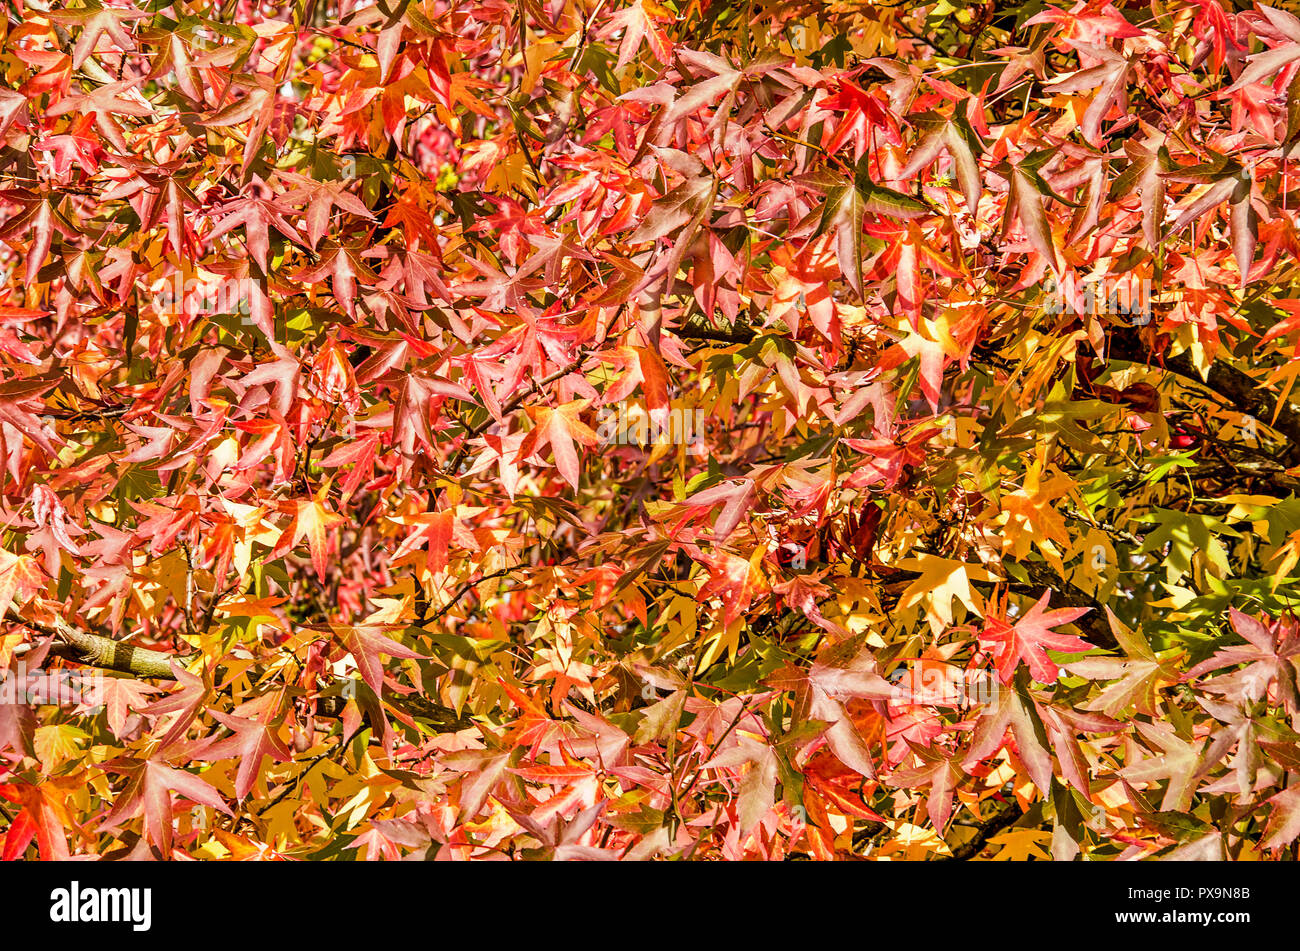 Viele Blätter von sweet Gum Trees, oder Liquidambar styraciflua, in verschiedenen Farben von Grün über Gelb und Orange bis Rot, an einem sonnigen Tag im Herbst Stockfoto